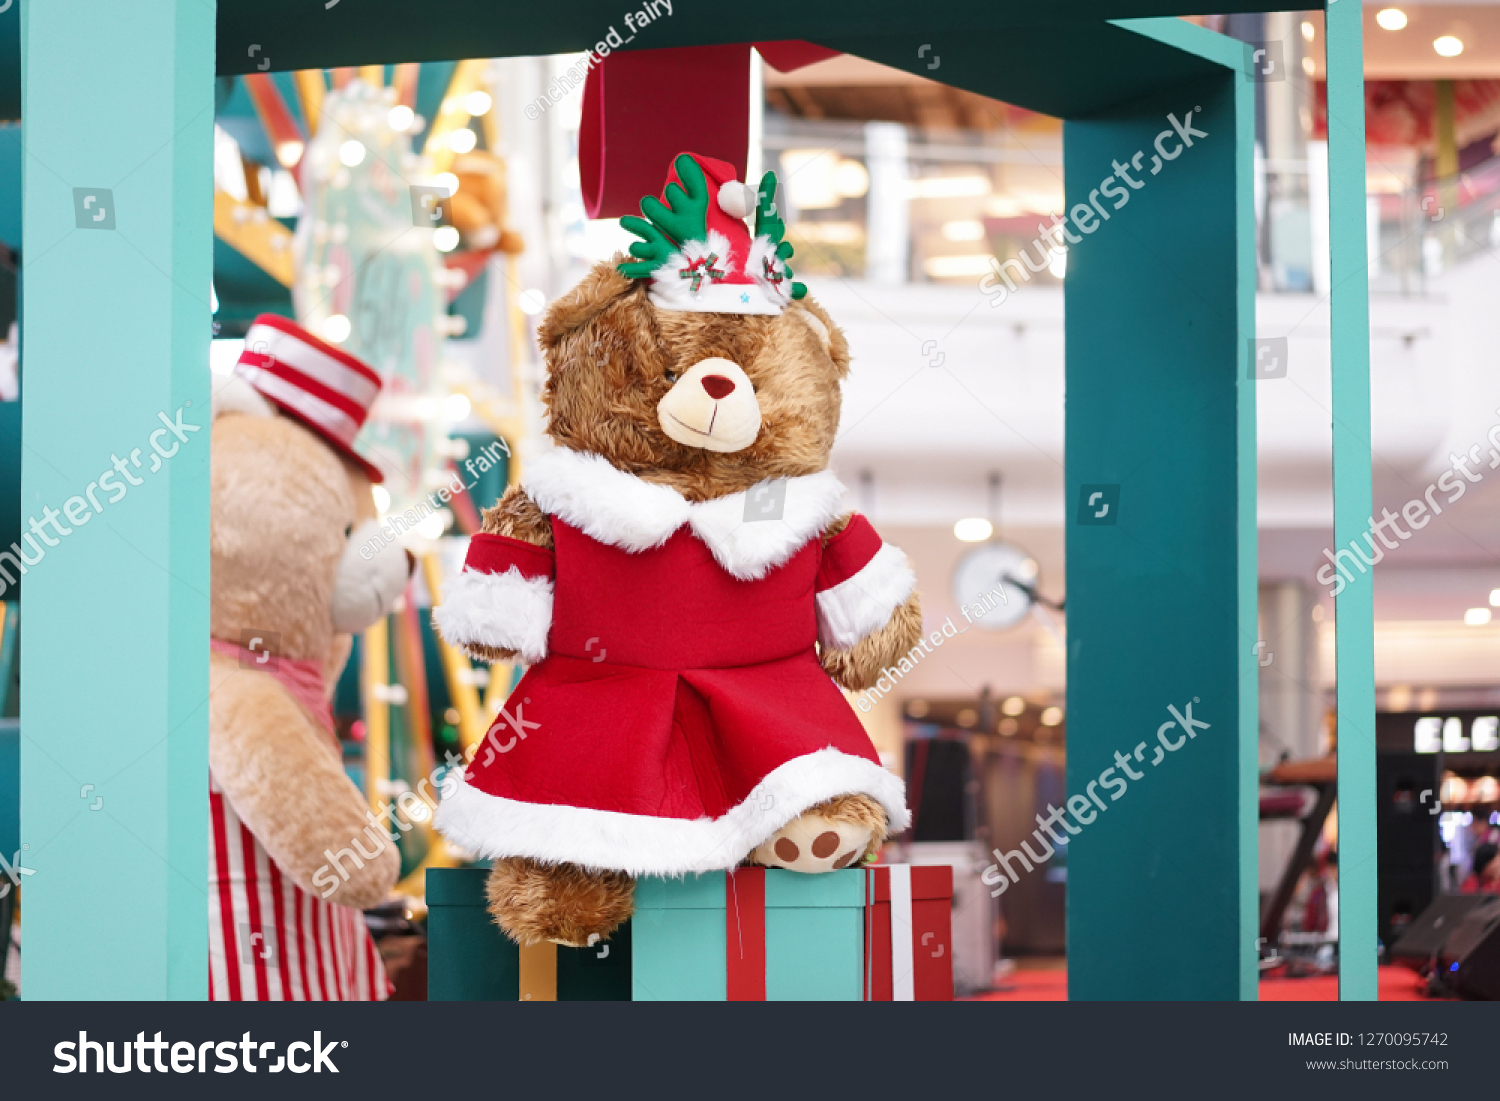 teddy bear santa outfit